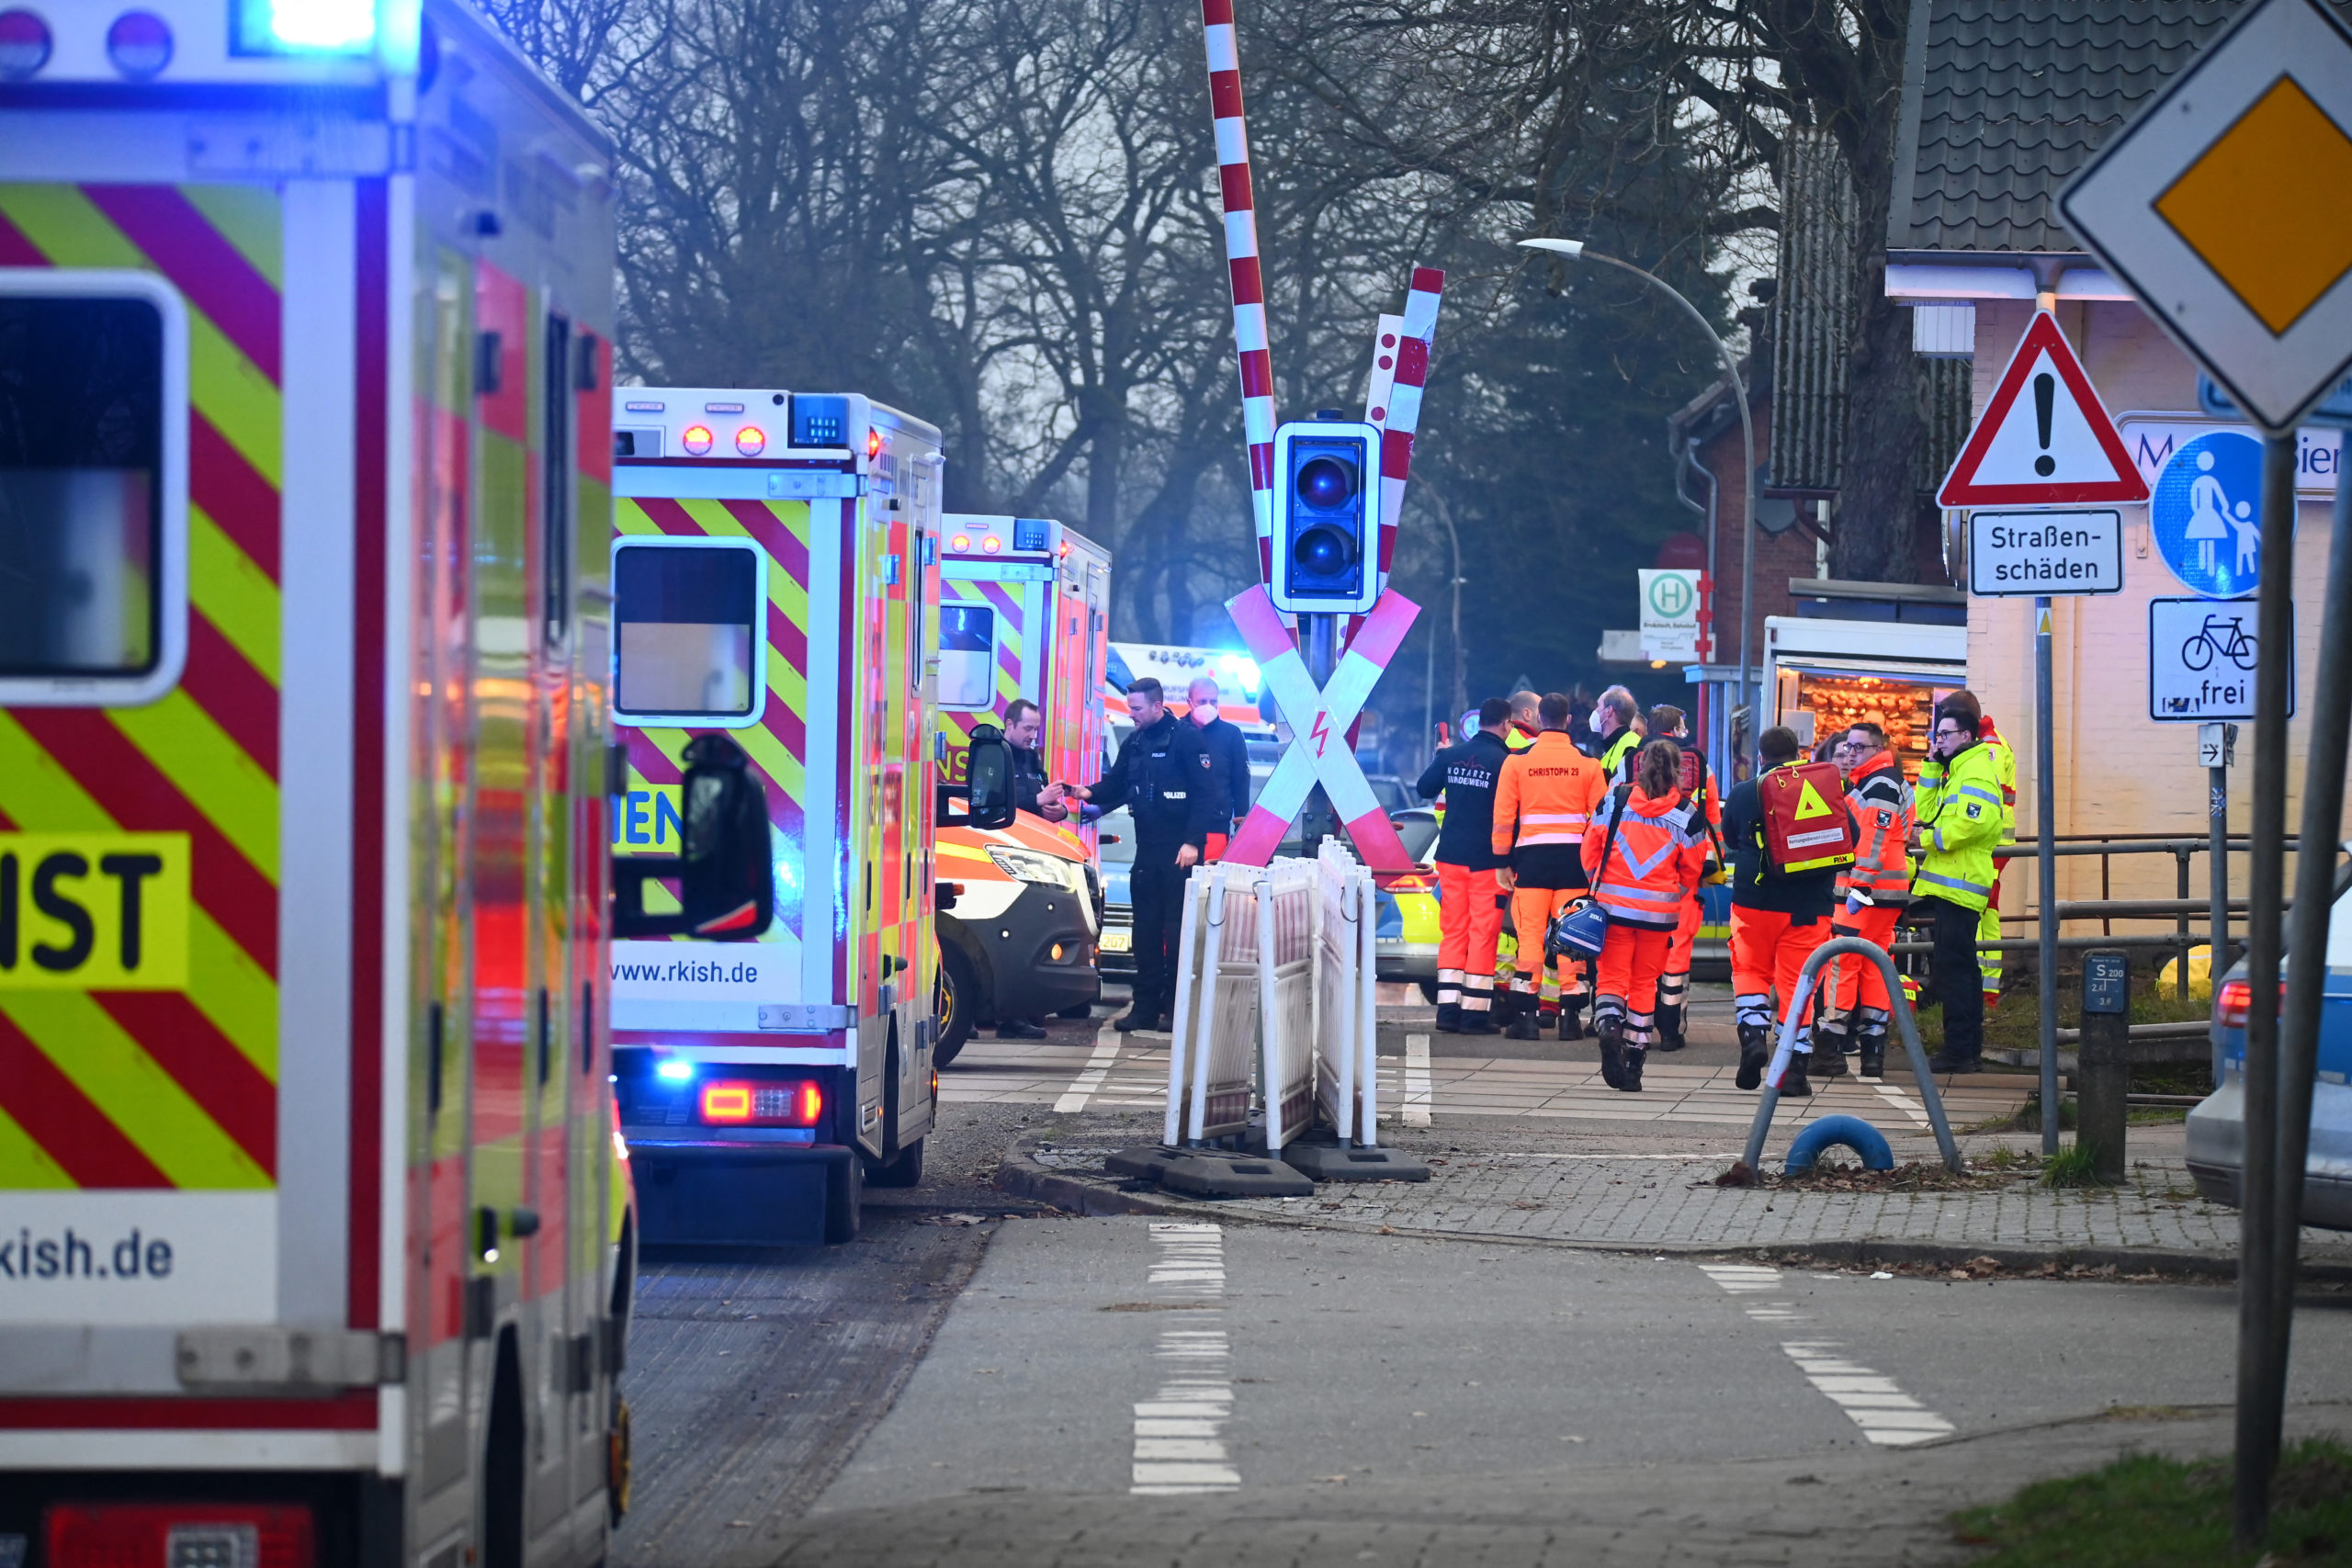 Γερμανία: Άνδρας επιτέθηκε με μαχαίρι σε επιβάτες τρένου – Δύο νεκροί και έξι τραυματίες